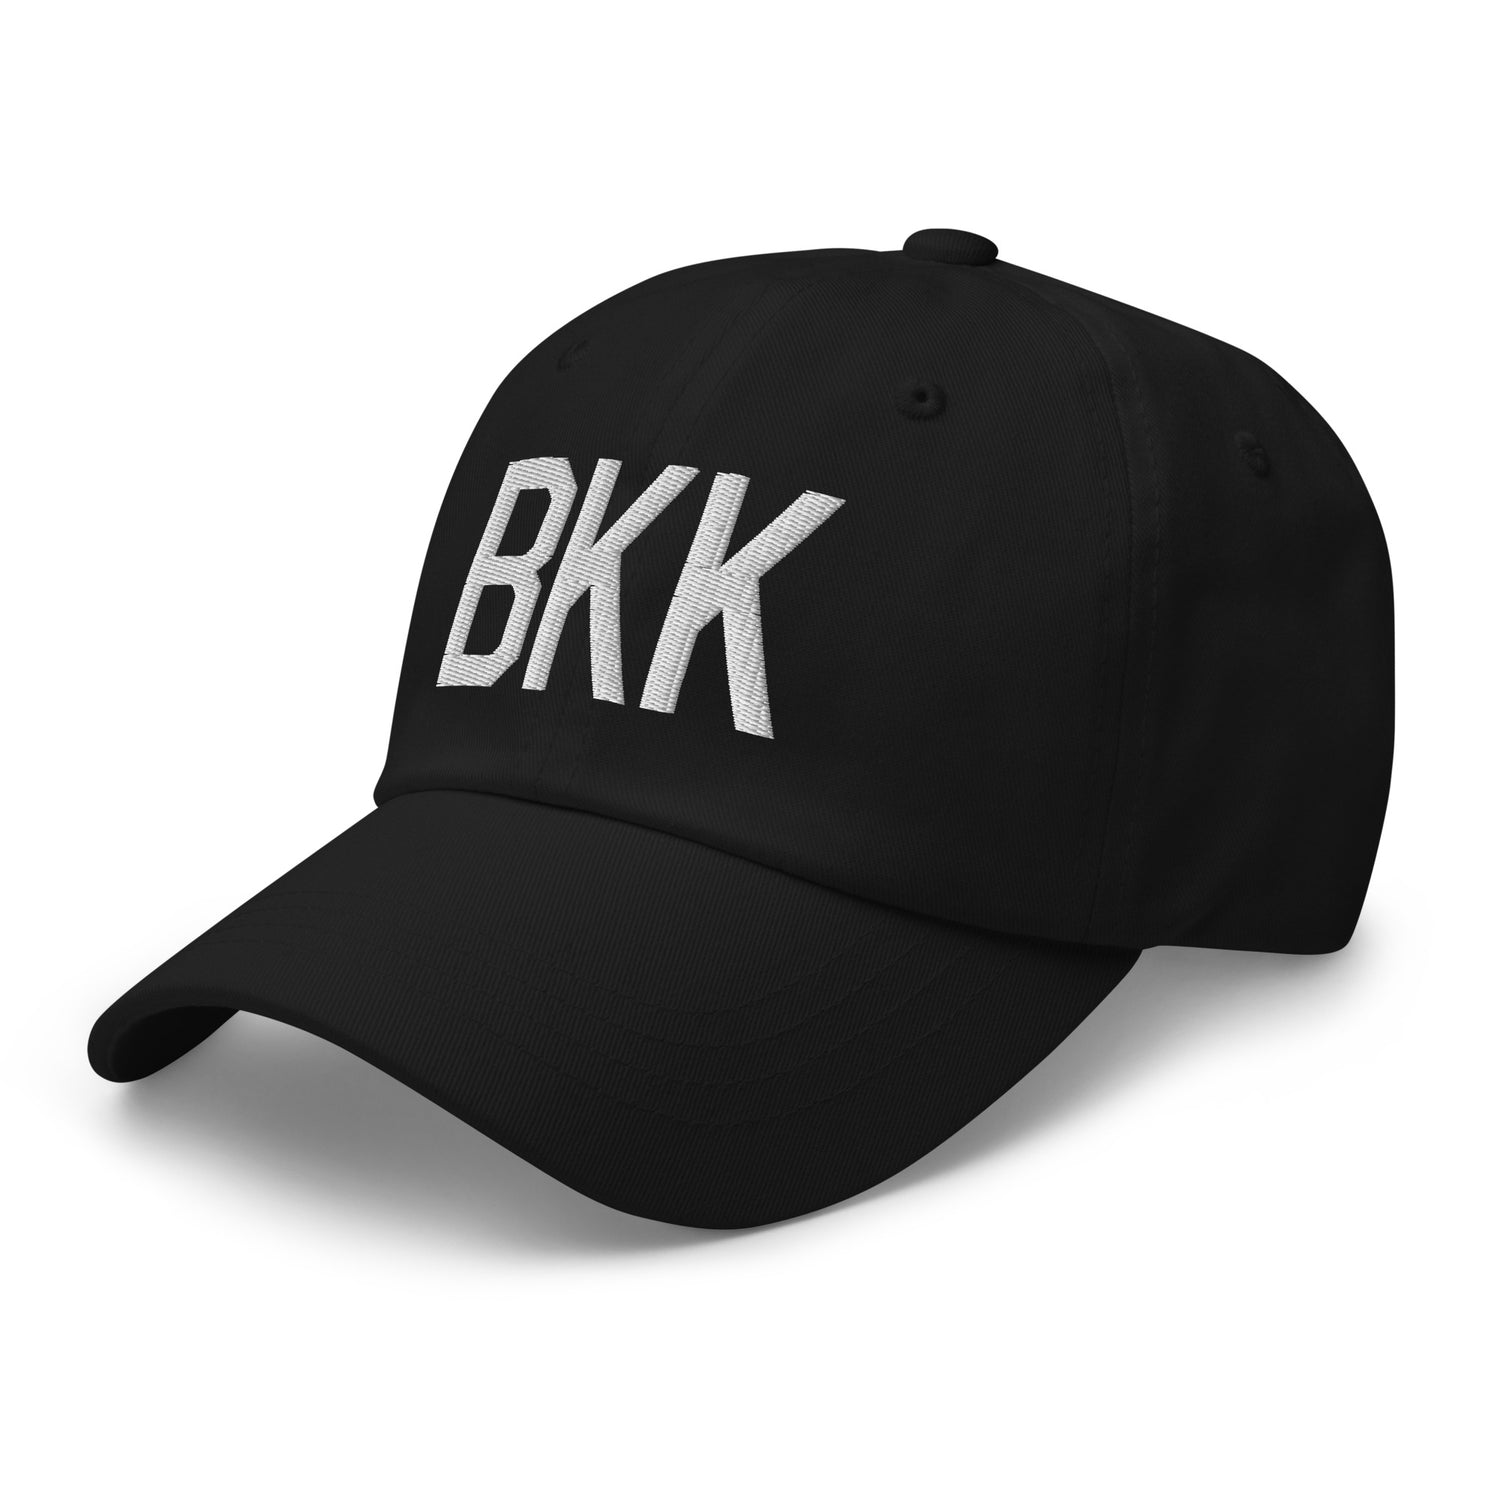 Bangkok Thailand Hats and Caps • BKK Airport Code